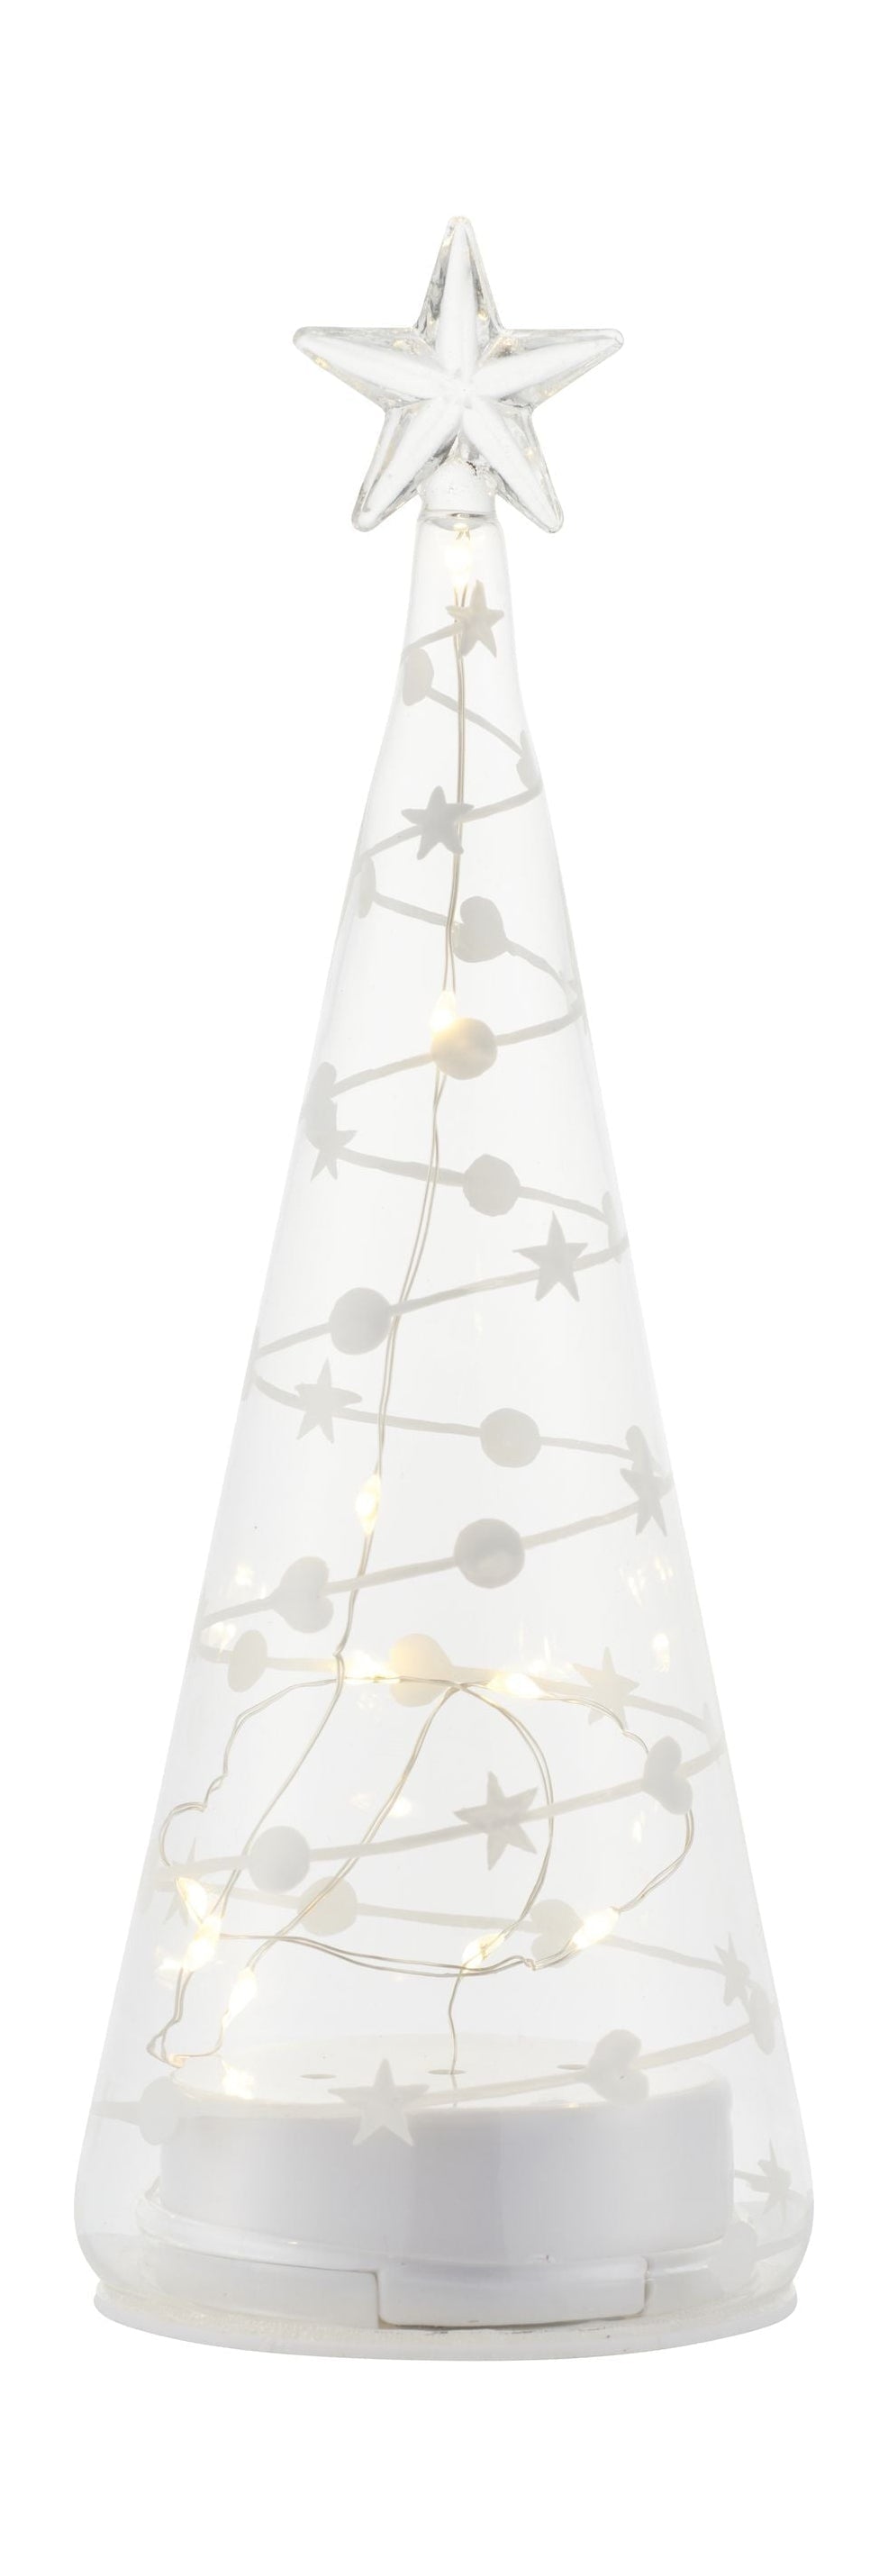 Sirius Sweet Christmas Tree, H22 cm, wit/helder